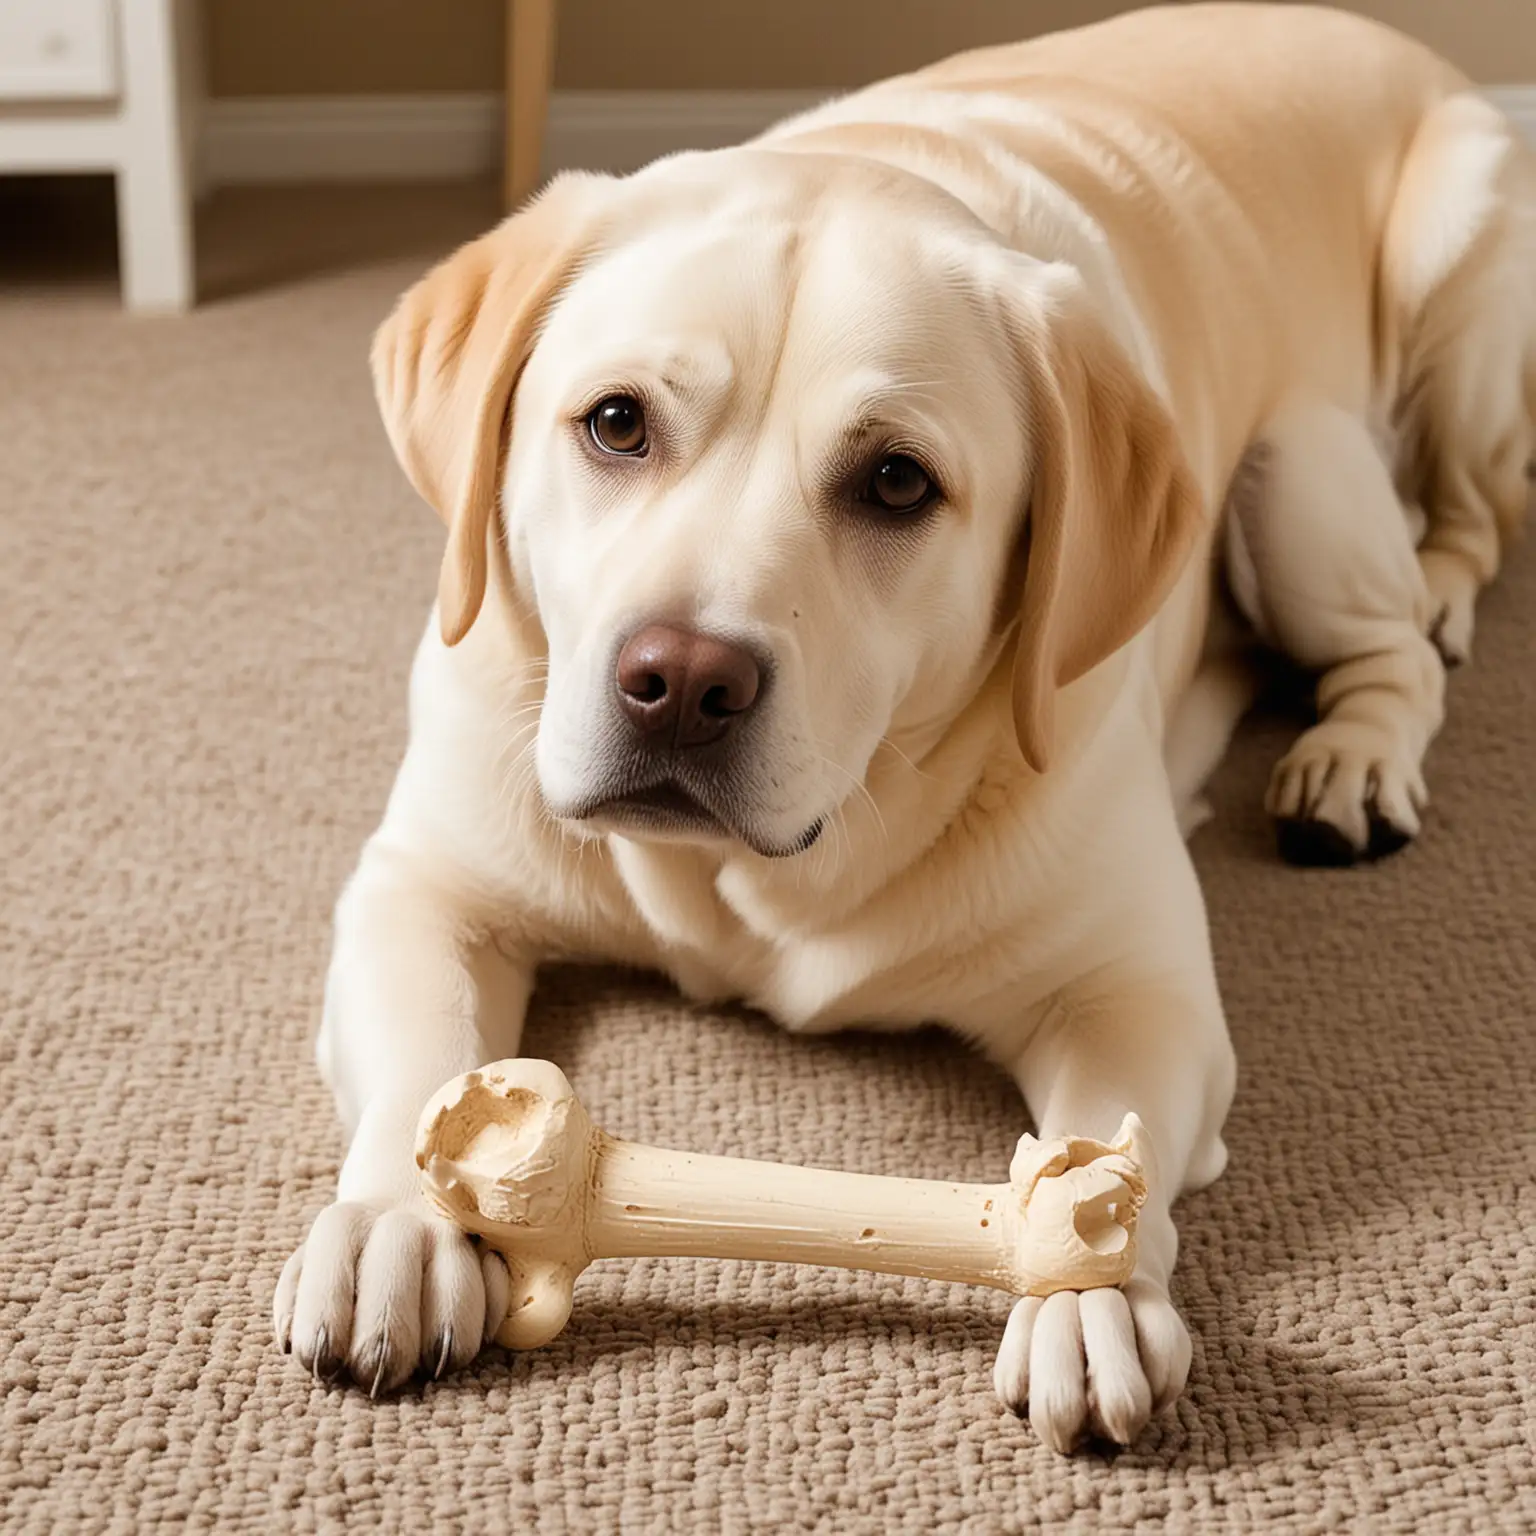 Playful Labrador Retriever with Toy Bone